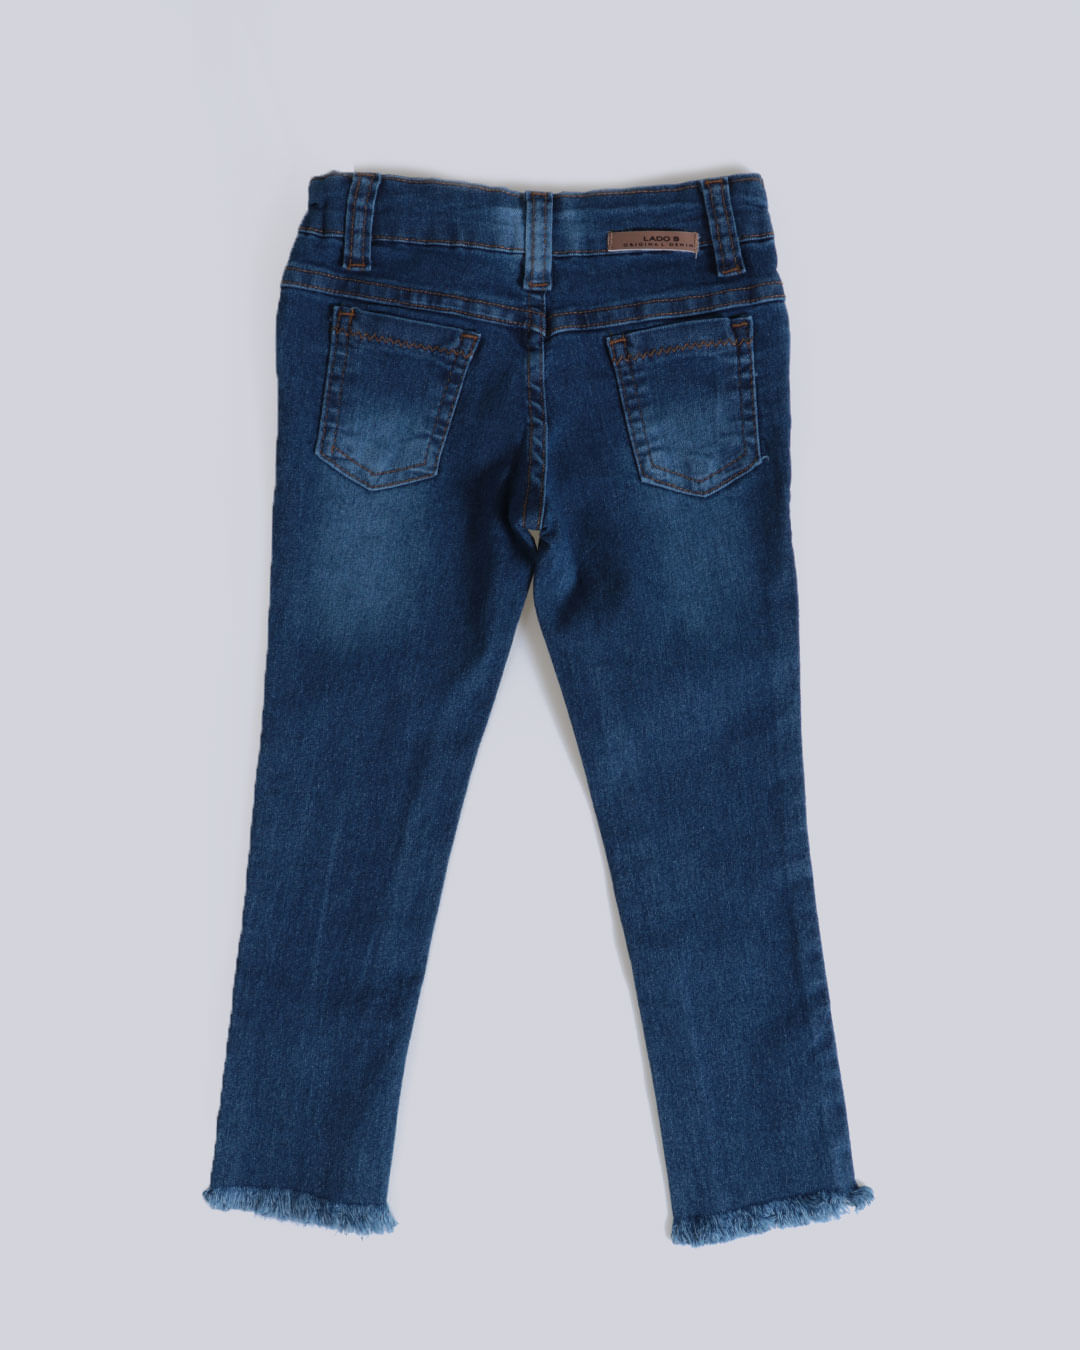 Calca-Jeans-10019-6812-Le-Bsc-Fem-13---Blue-Jeans-Escuro